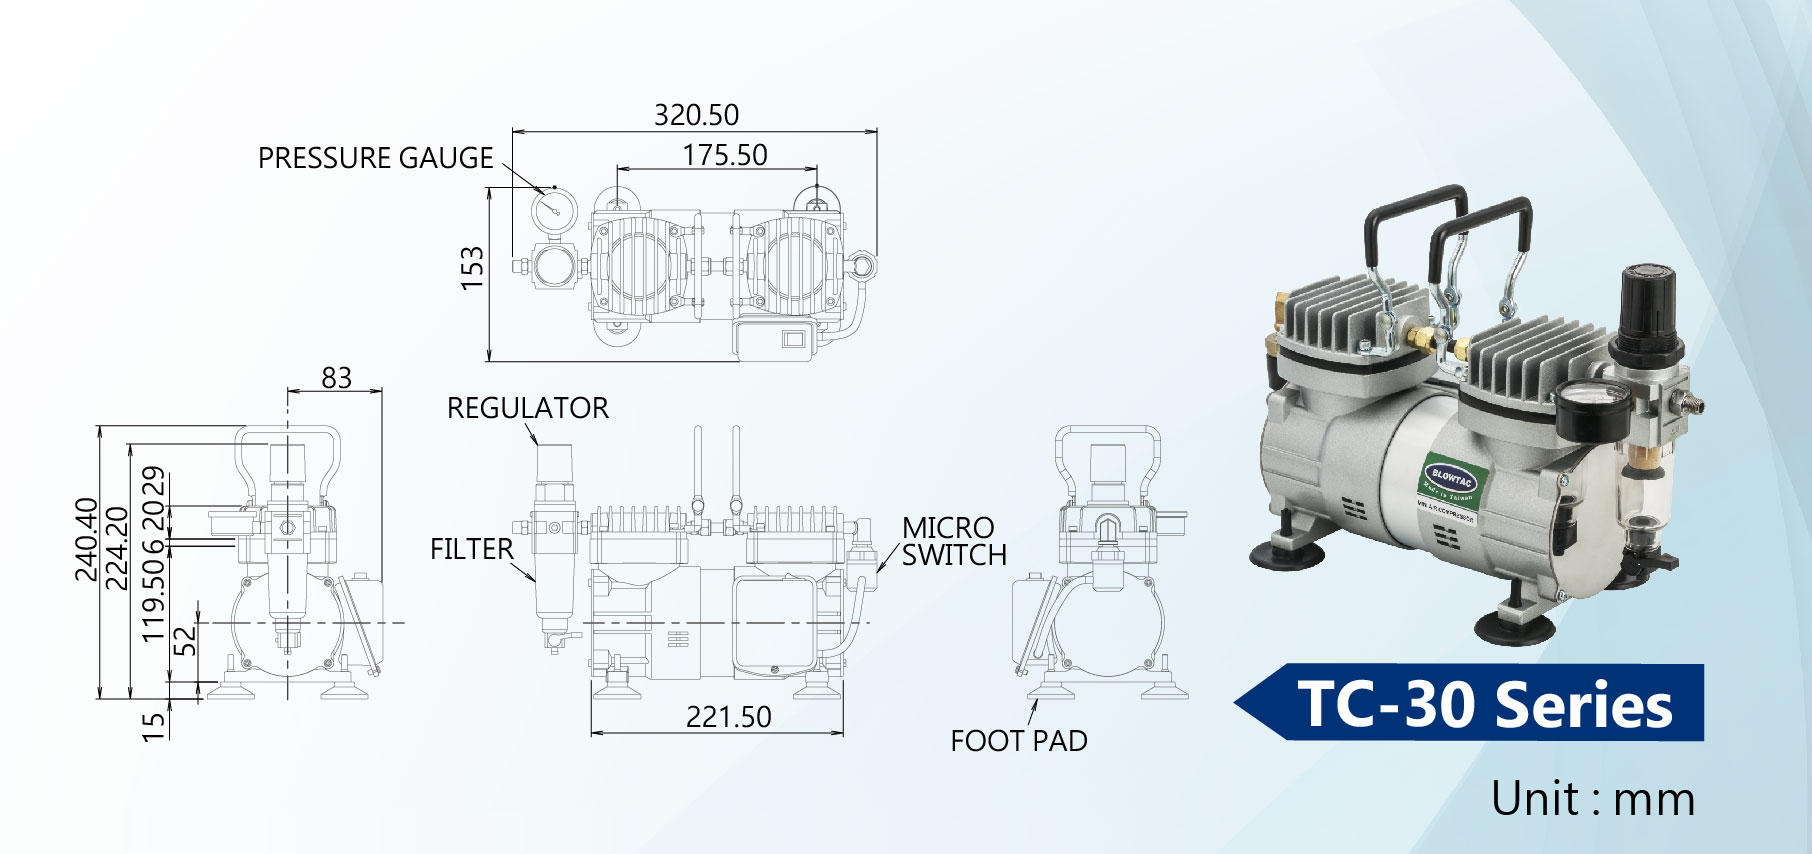 Dimensão dos Mini Compressores de Ar da Série TC-30